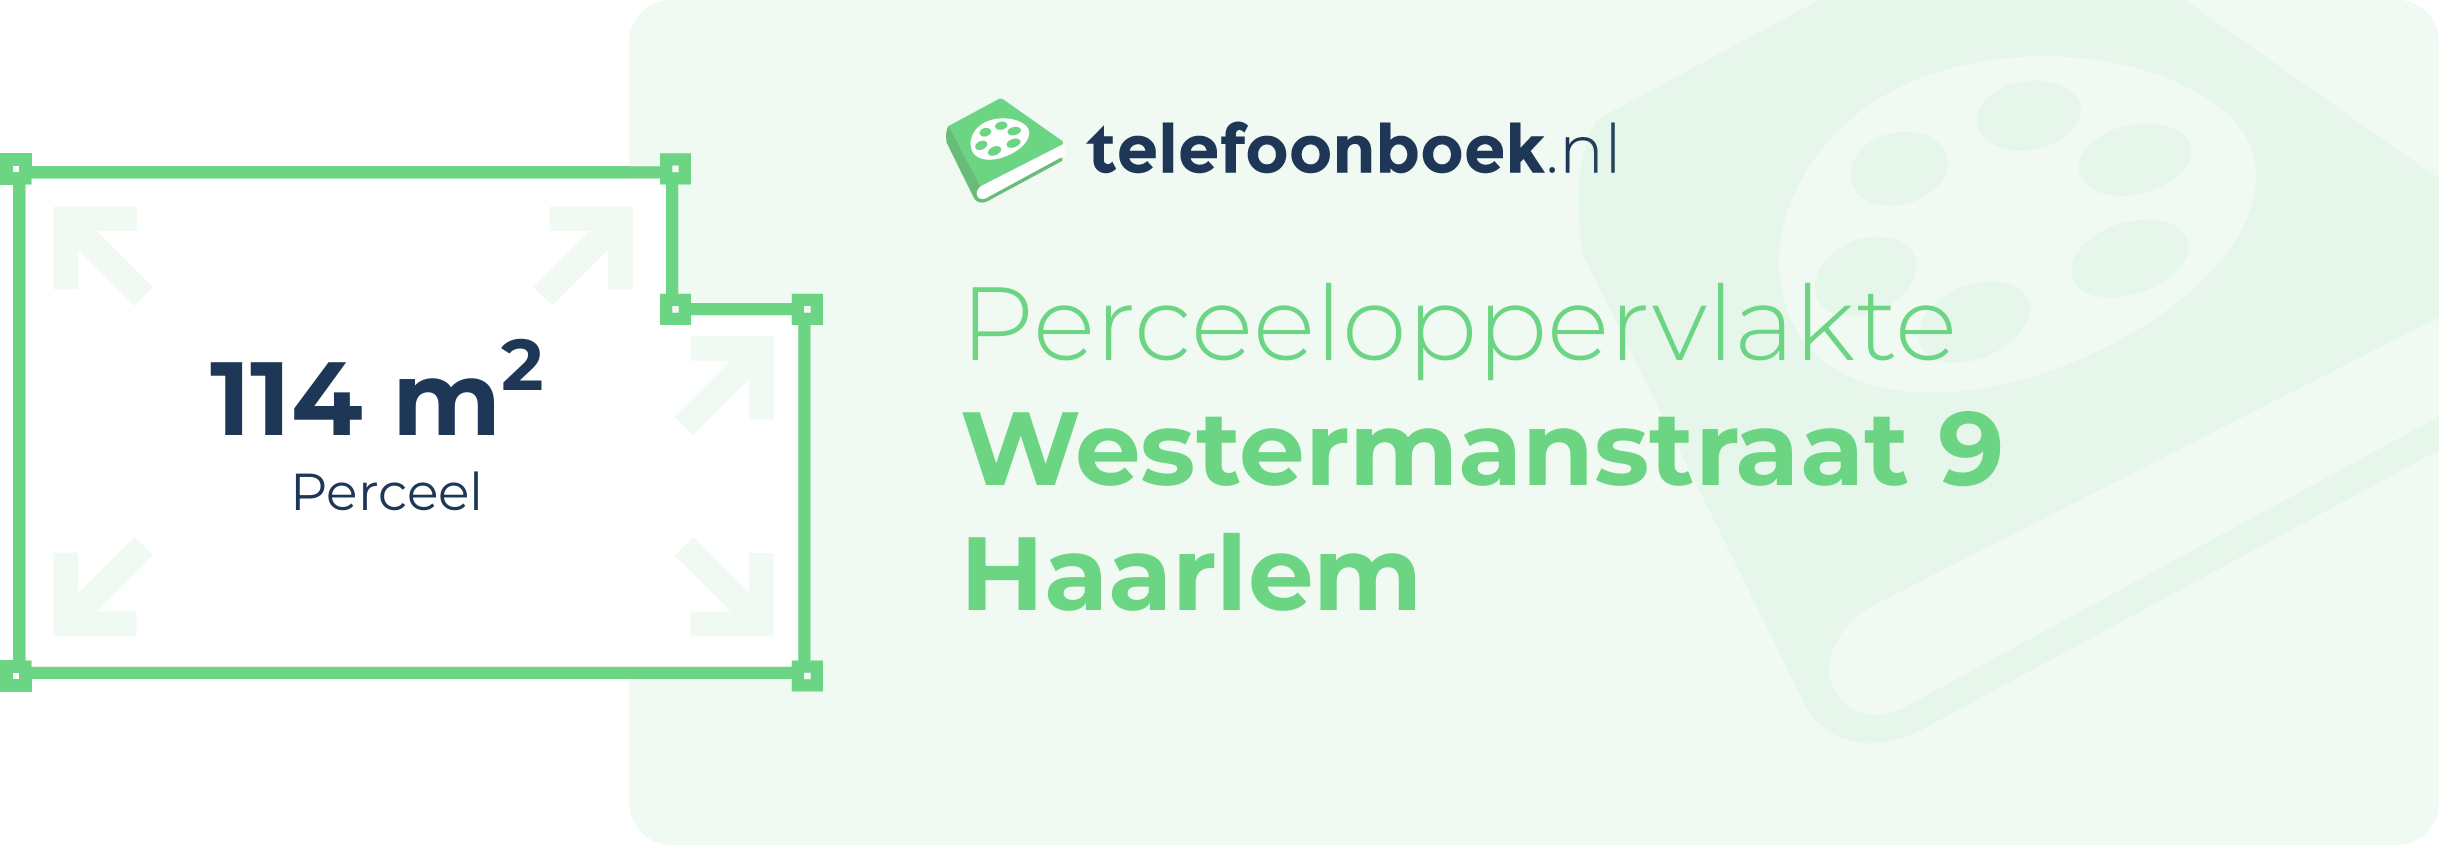 Perceeloppervlakte Westermanstraat 9 Haarlem